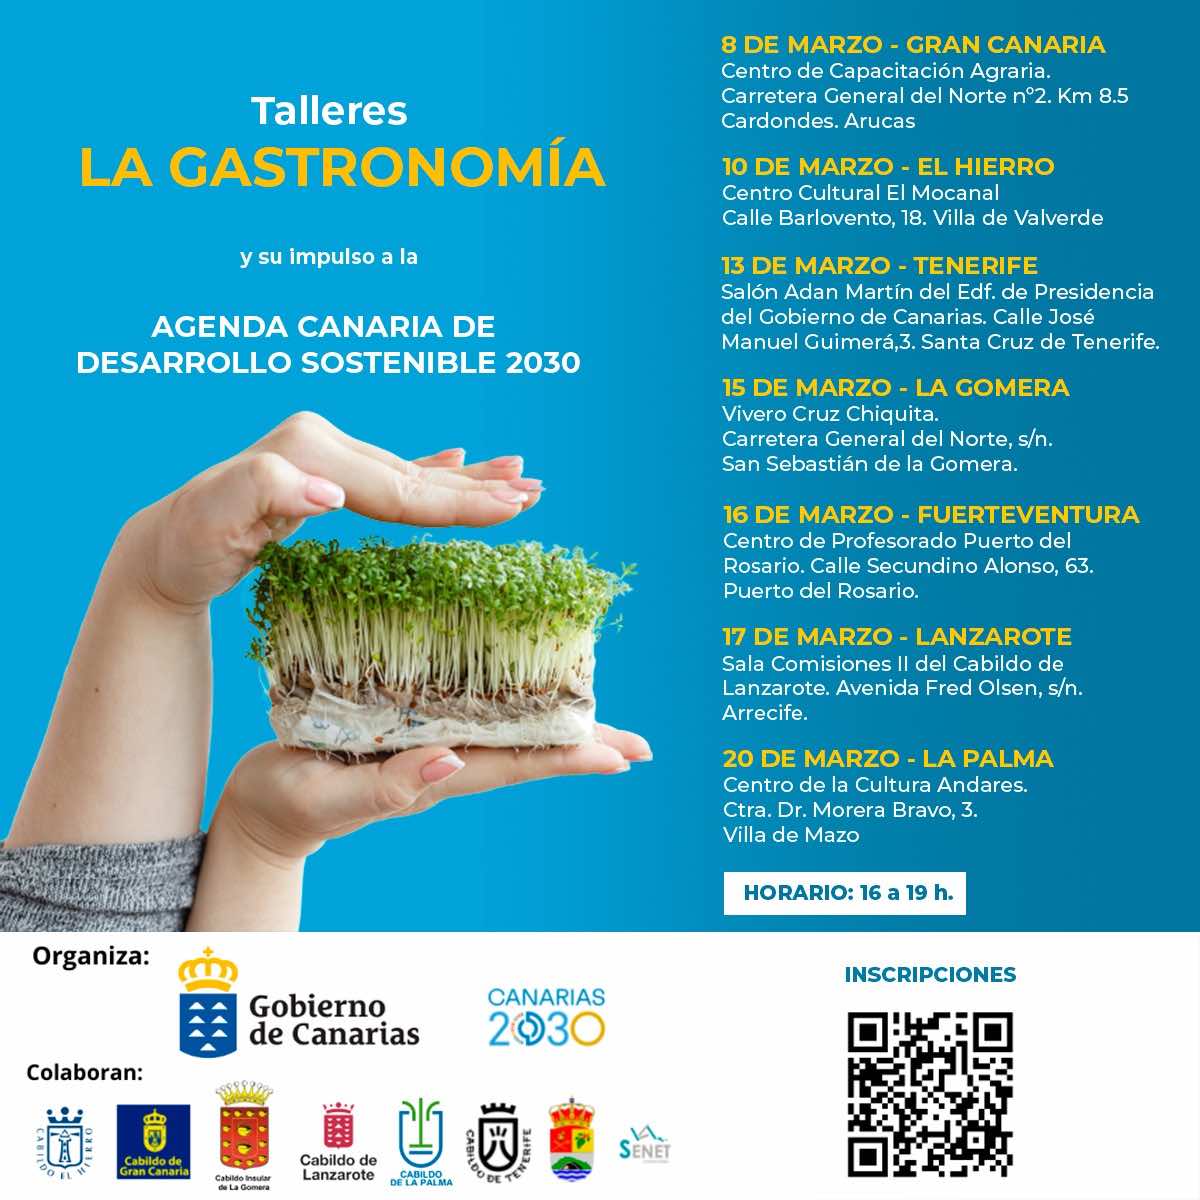 El Gobierno de Canarias organiza unos talleres gastronómicos para fomentar los hábitos sostenibles en la restauración 